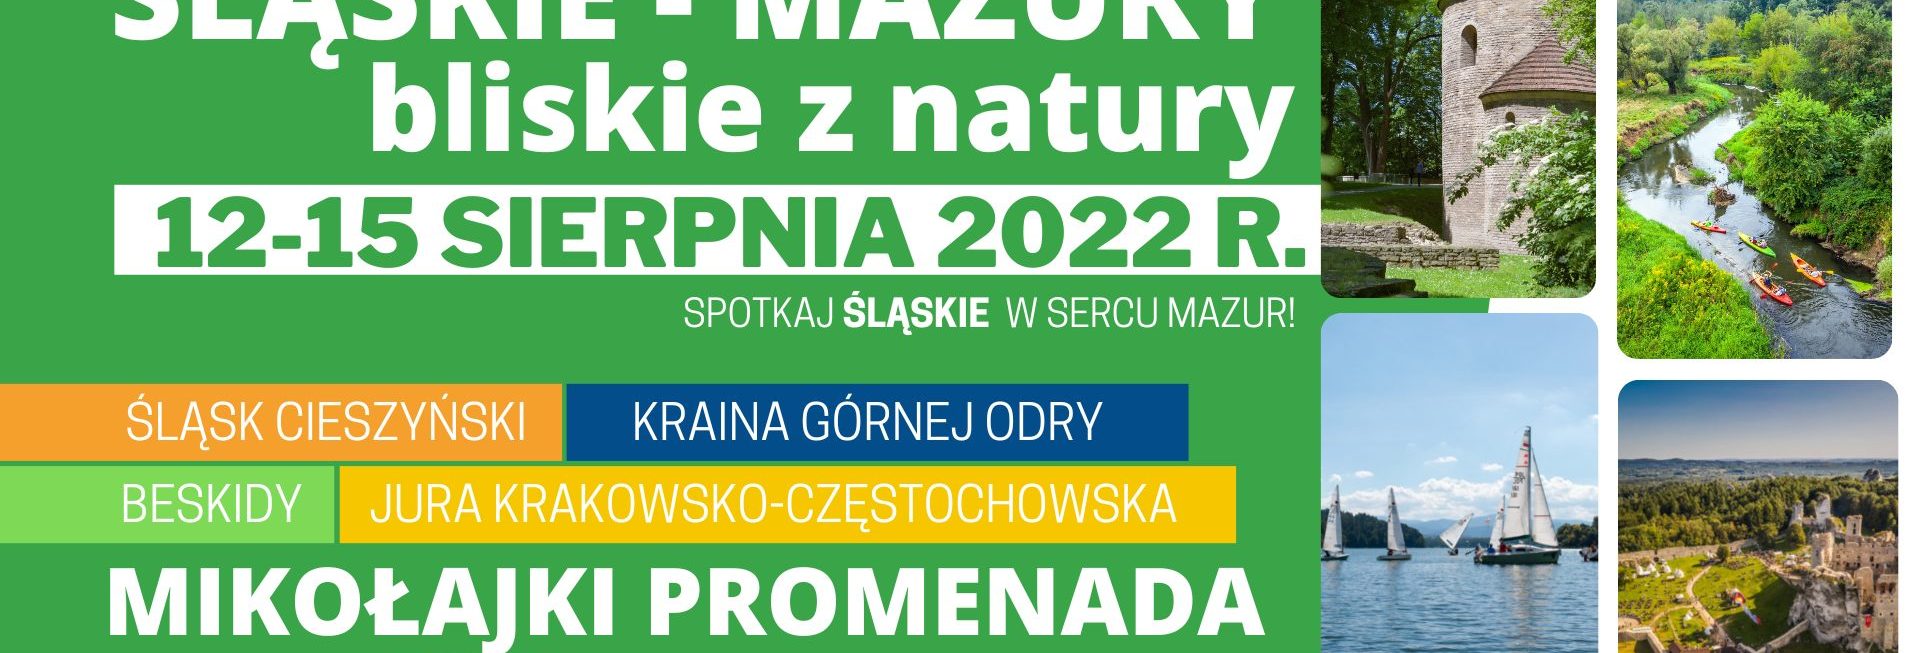 Plakat zapraszający do Mikołajek na Festyn Śląskie - Mazury bliskie z Natury Mikołajki 2022. 